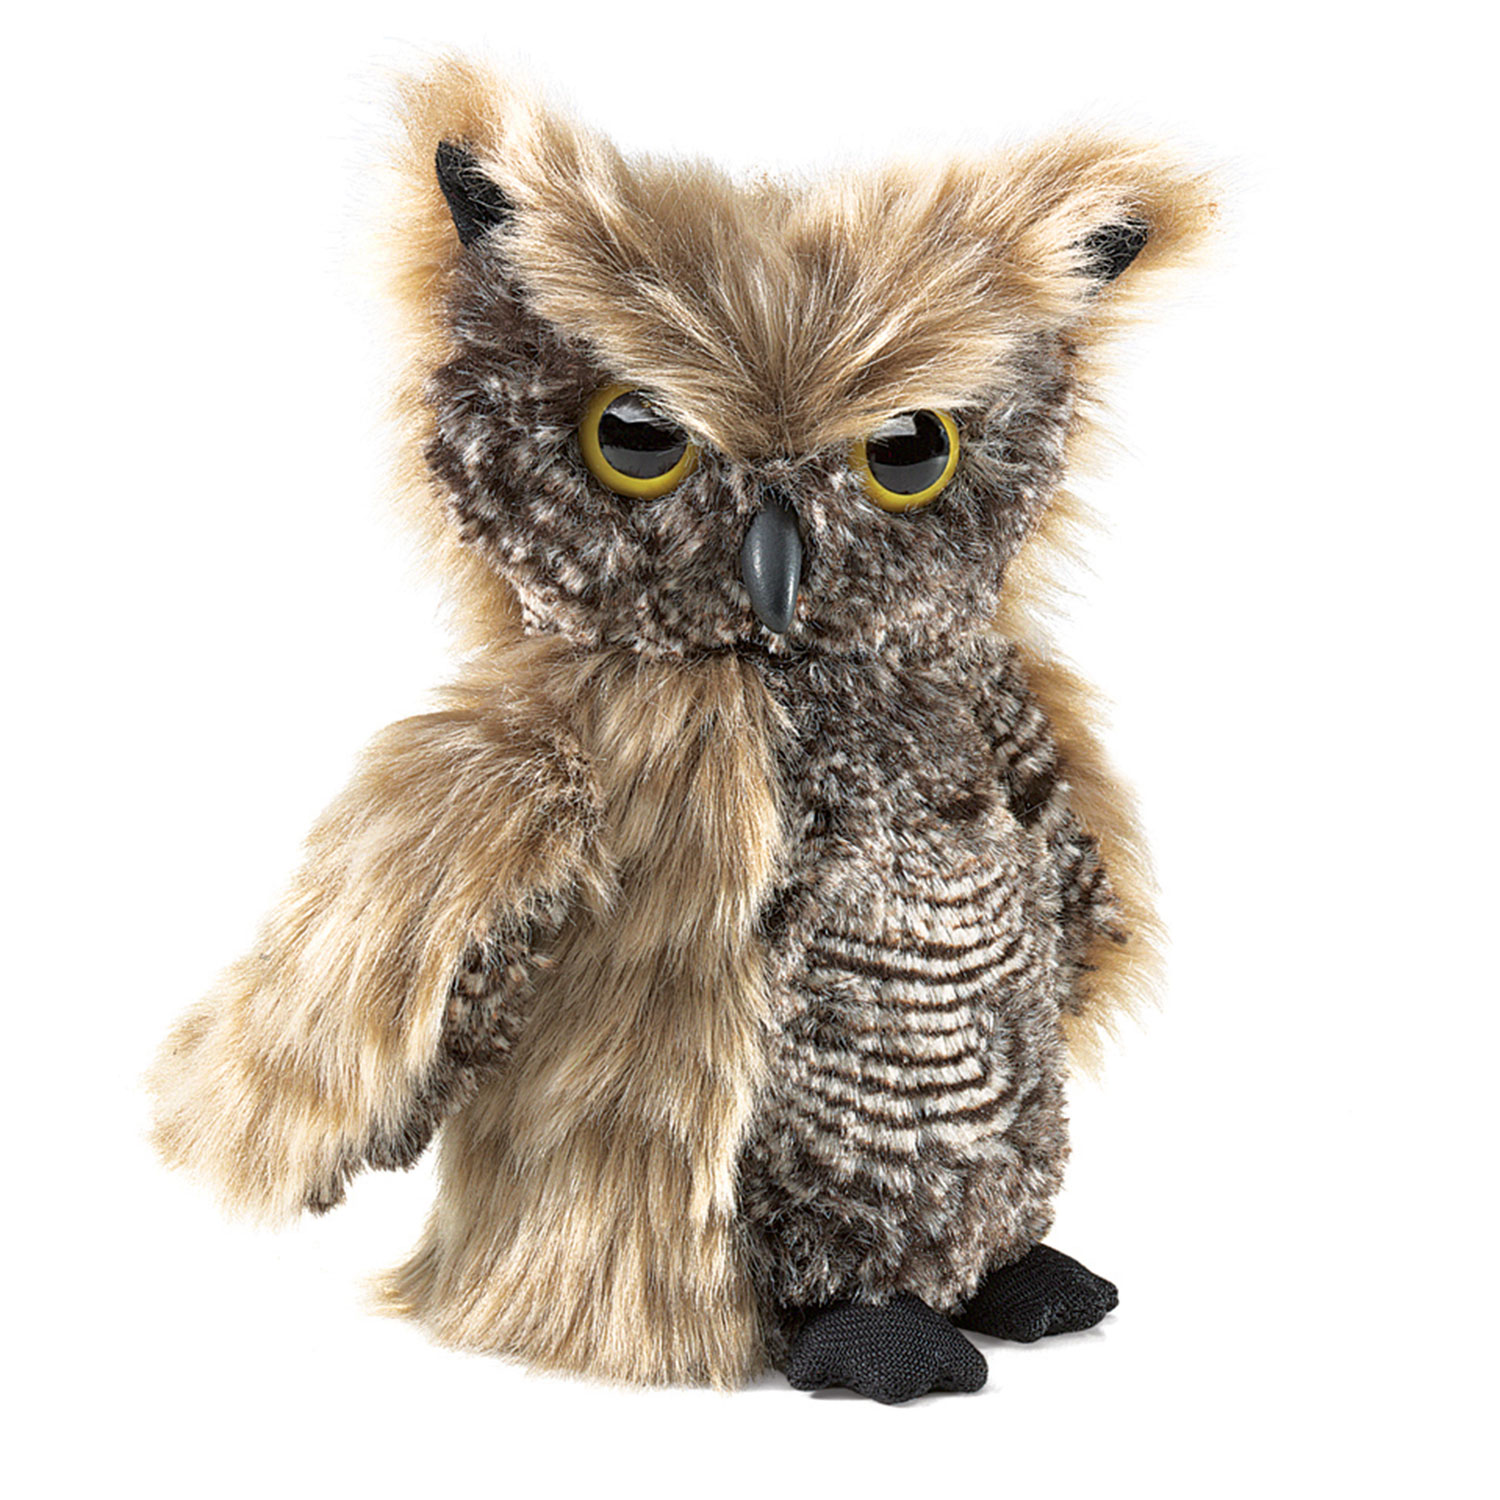 Kreisch-Eule / Screech Owl